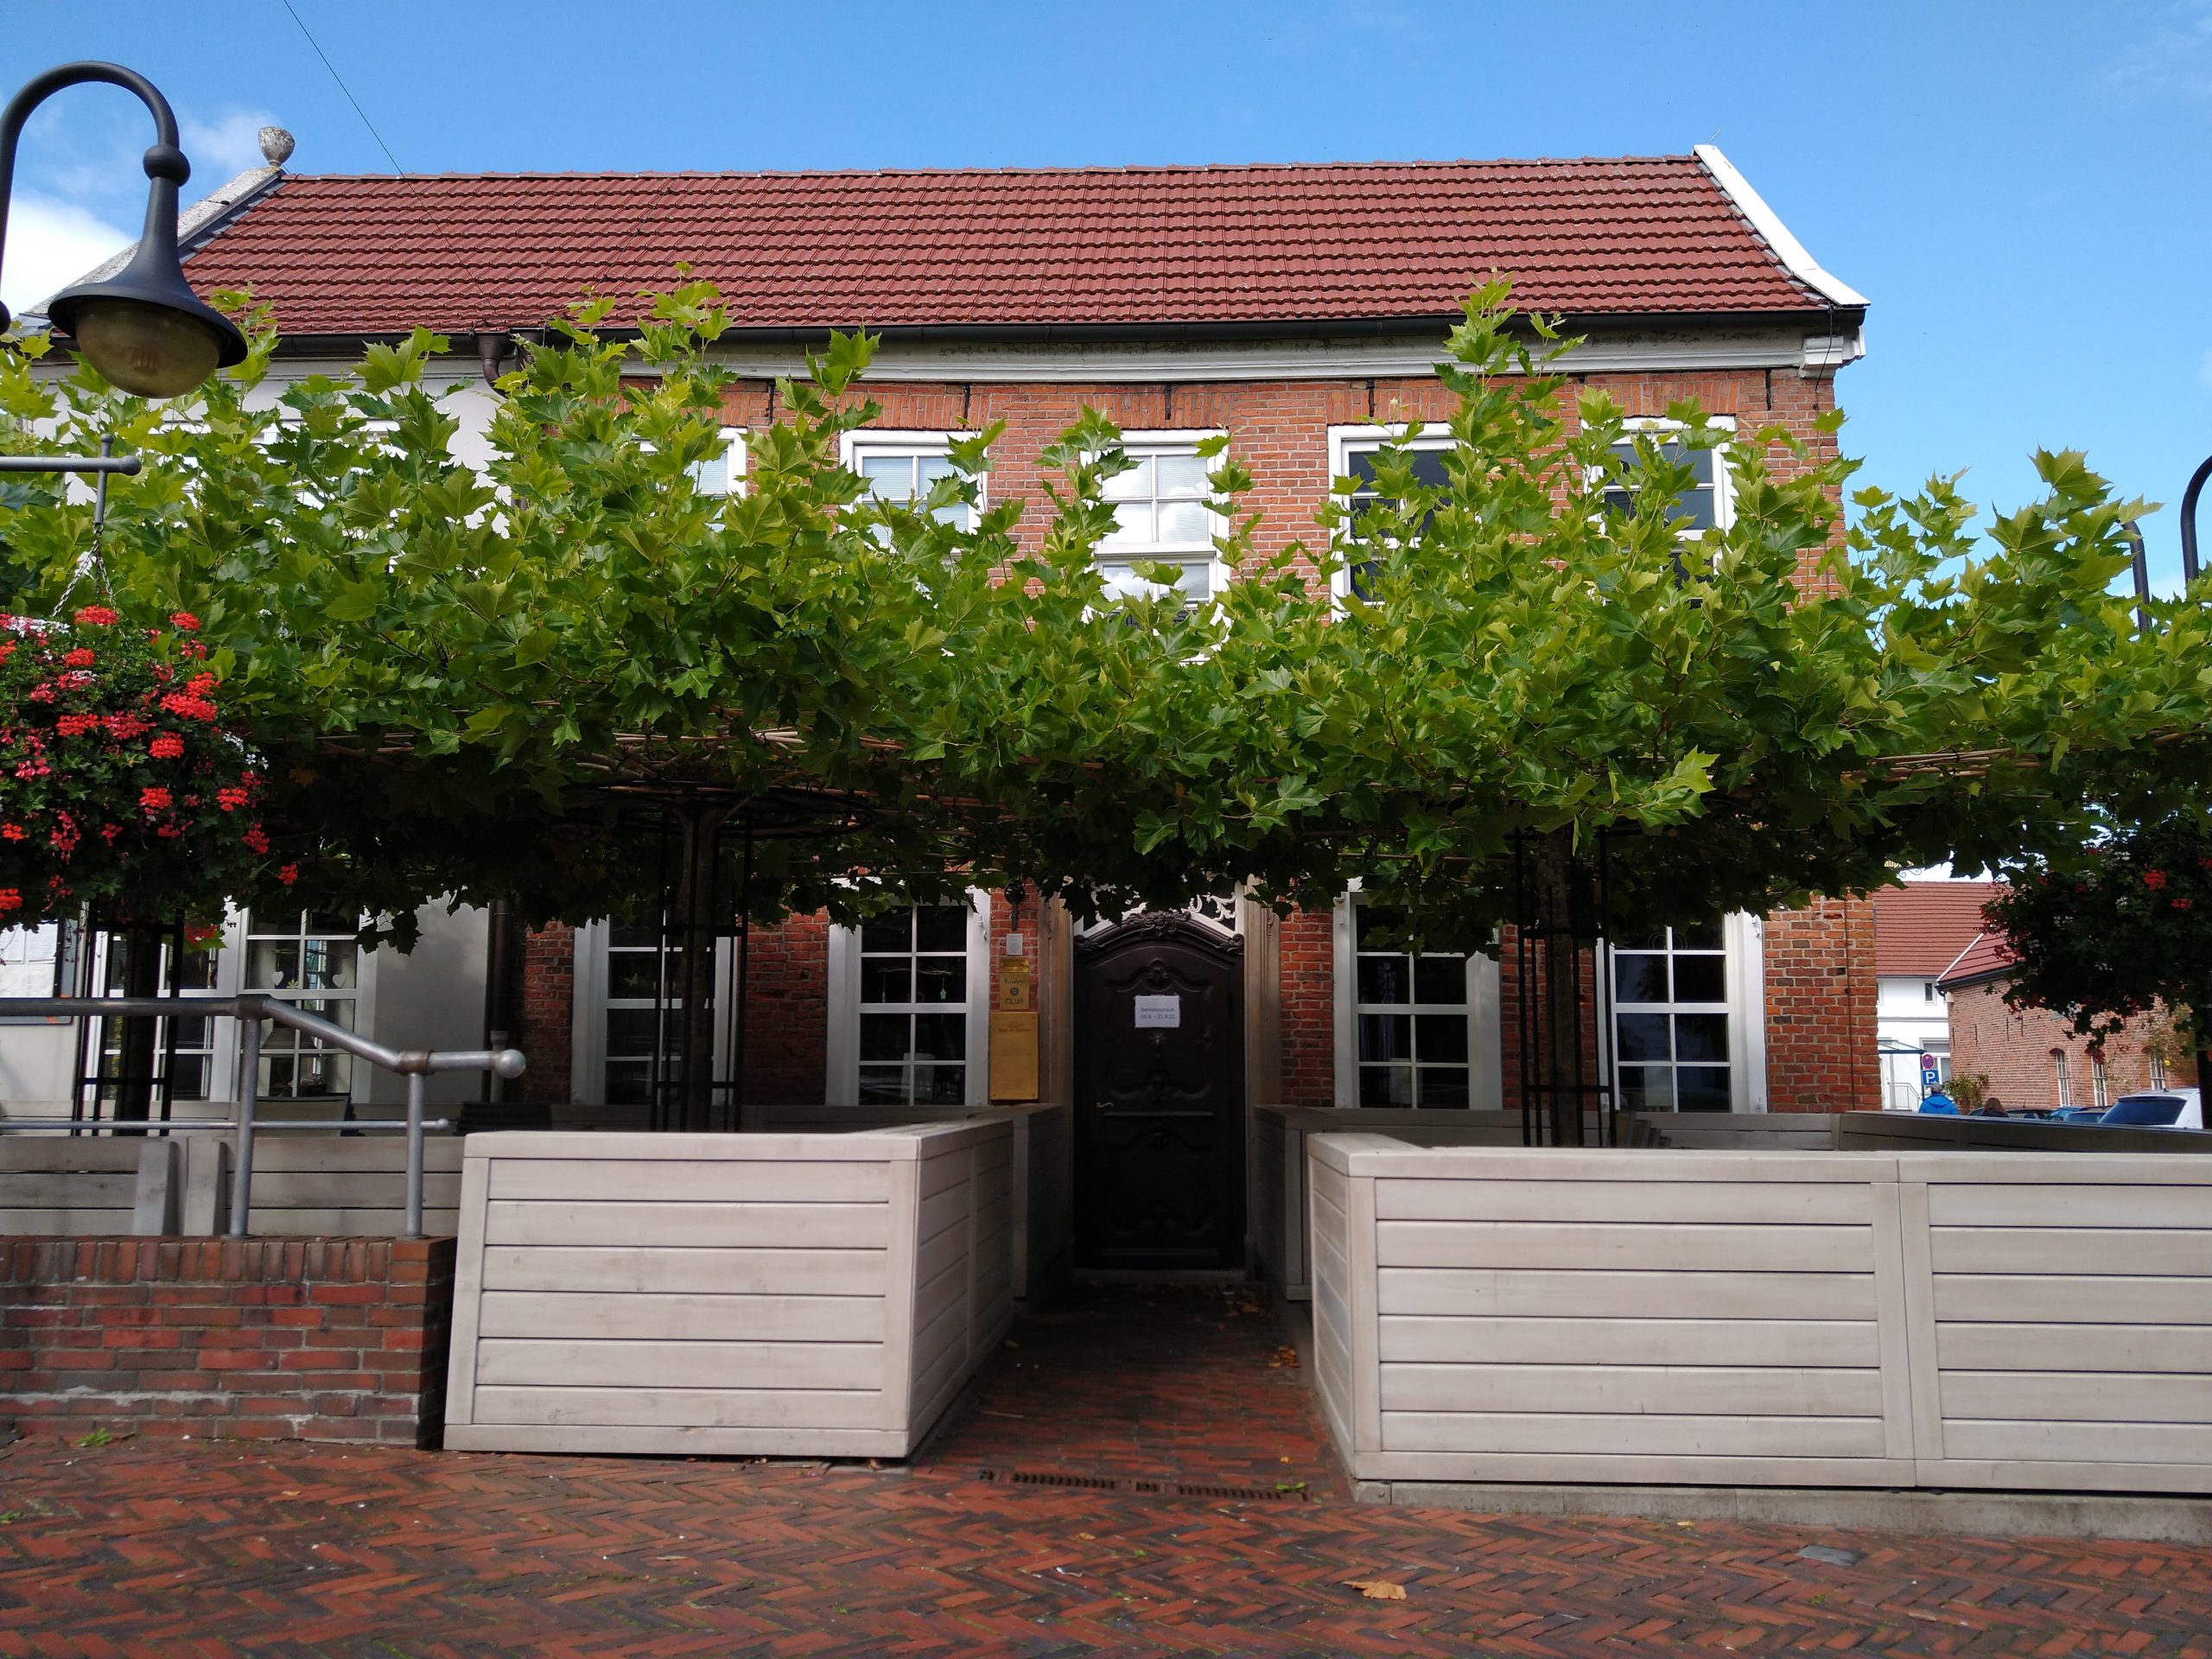 Stufenloser Eingang ins Restaurant. Links und rechts neben dem Eingang separate Lauben unter Bäumen.